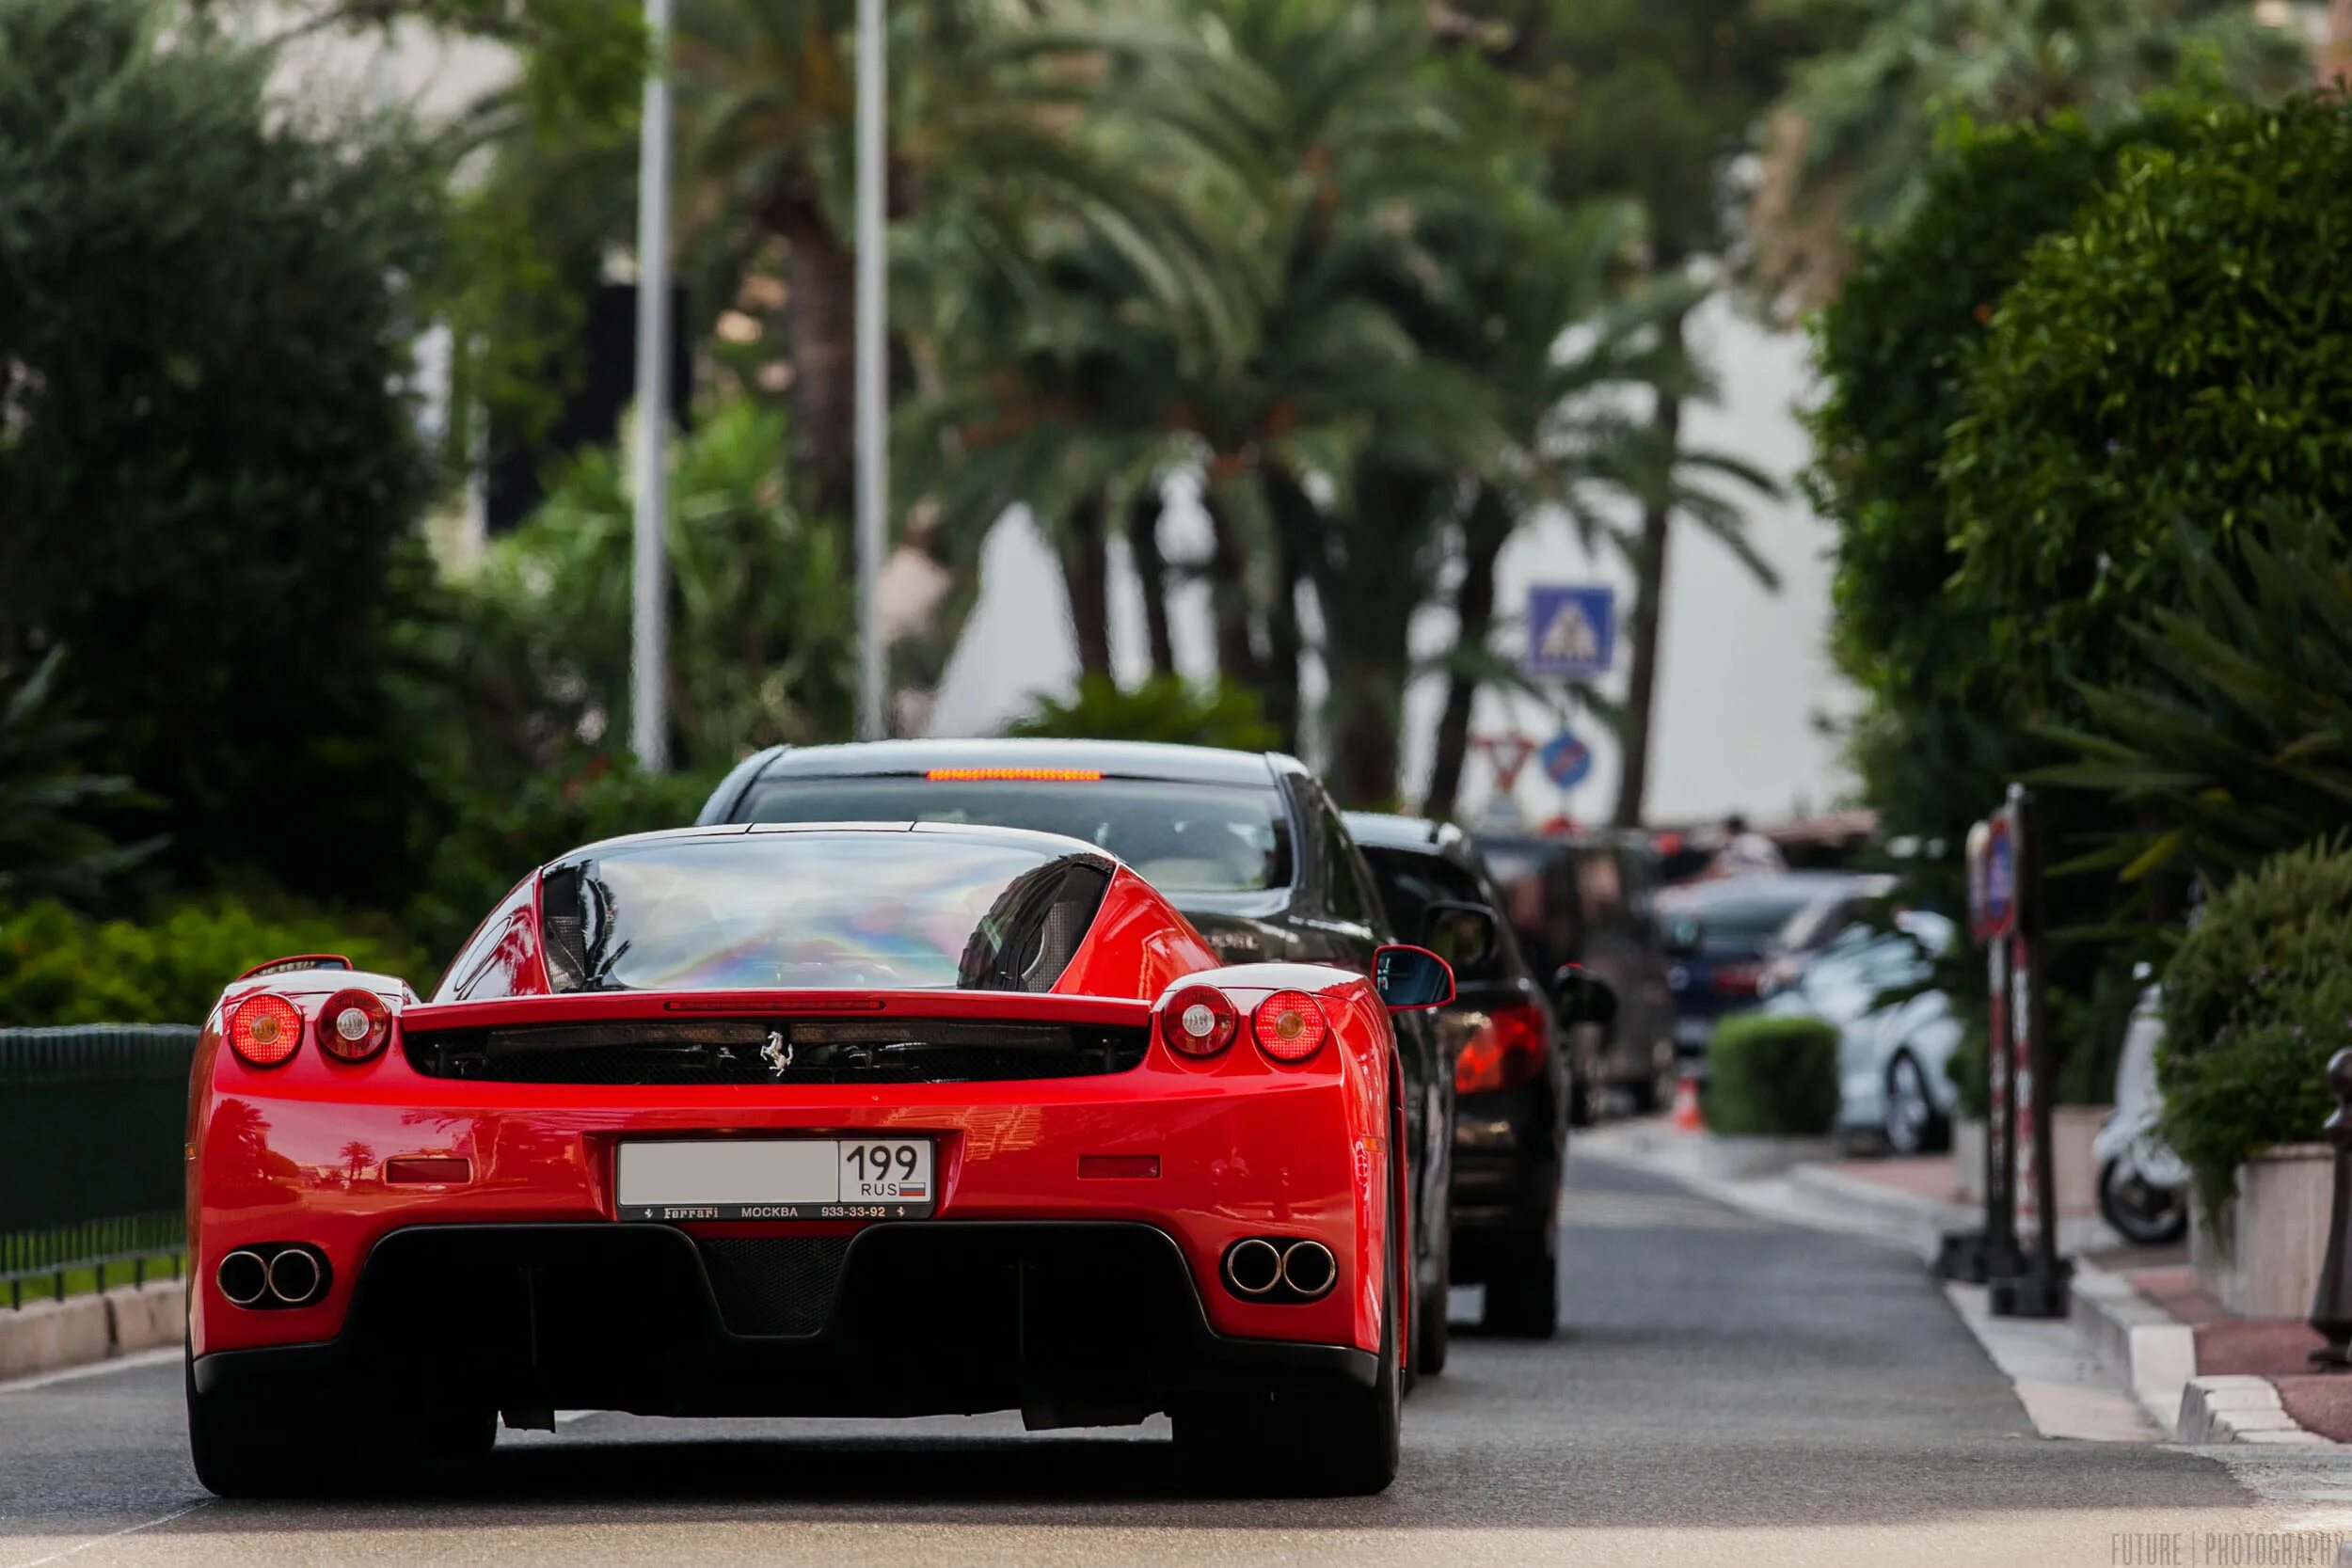 Car s outside. Феррари в клипе солнце Монако. Car on the Street Italia Ferrari. Феррари обои на телефон Монако. Красная машина на фоне Монако фото.